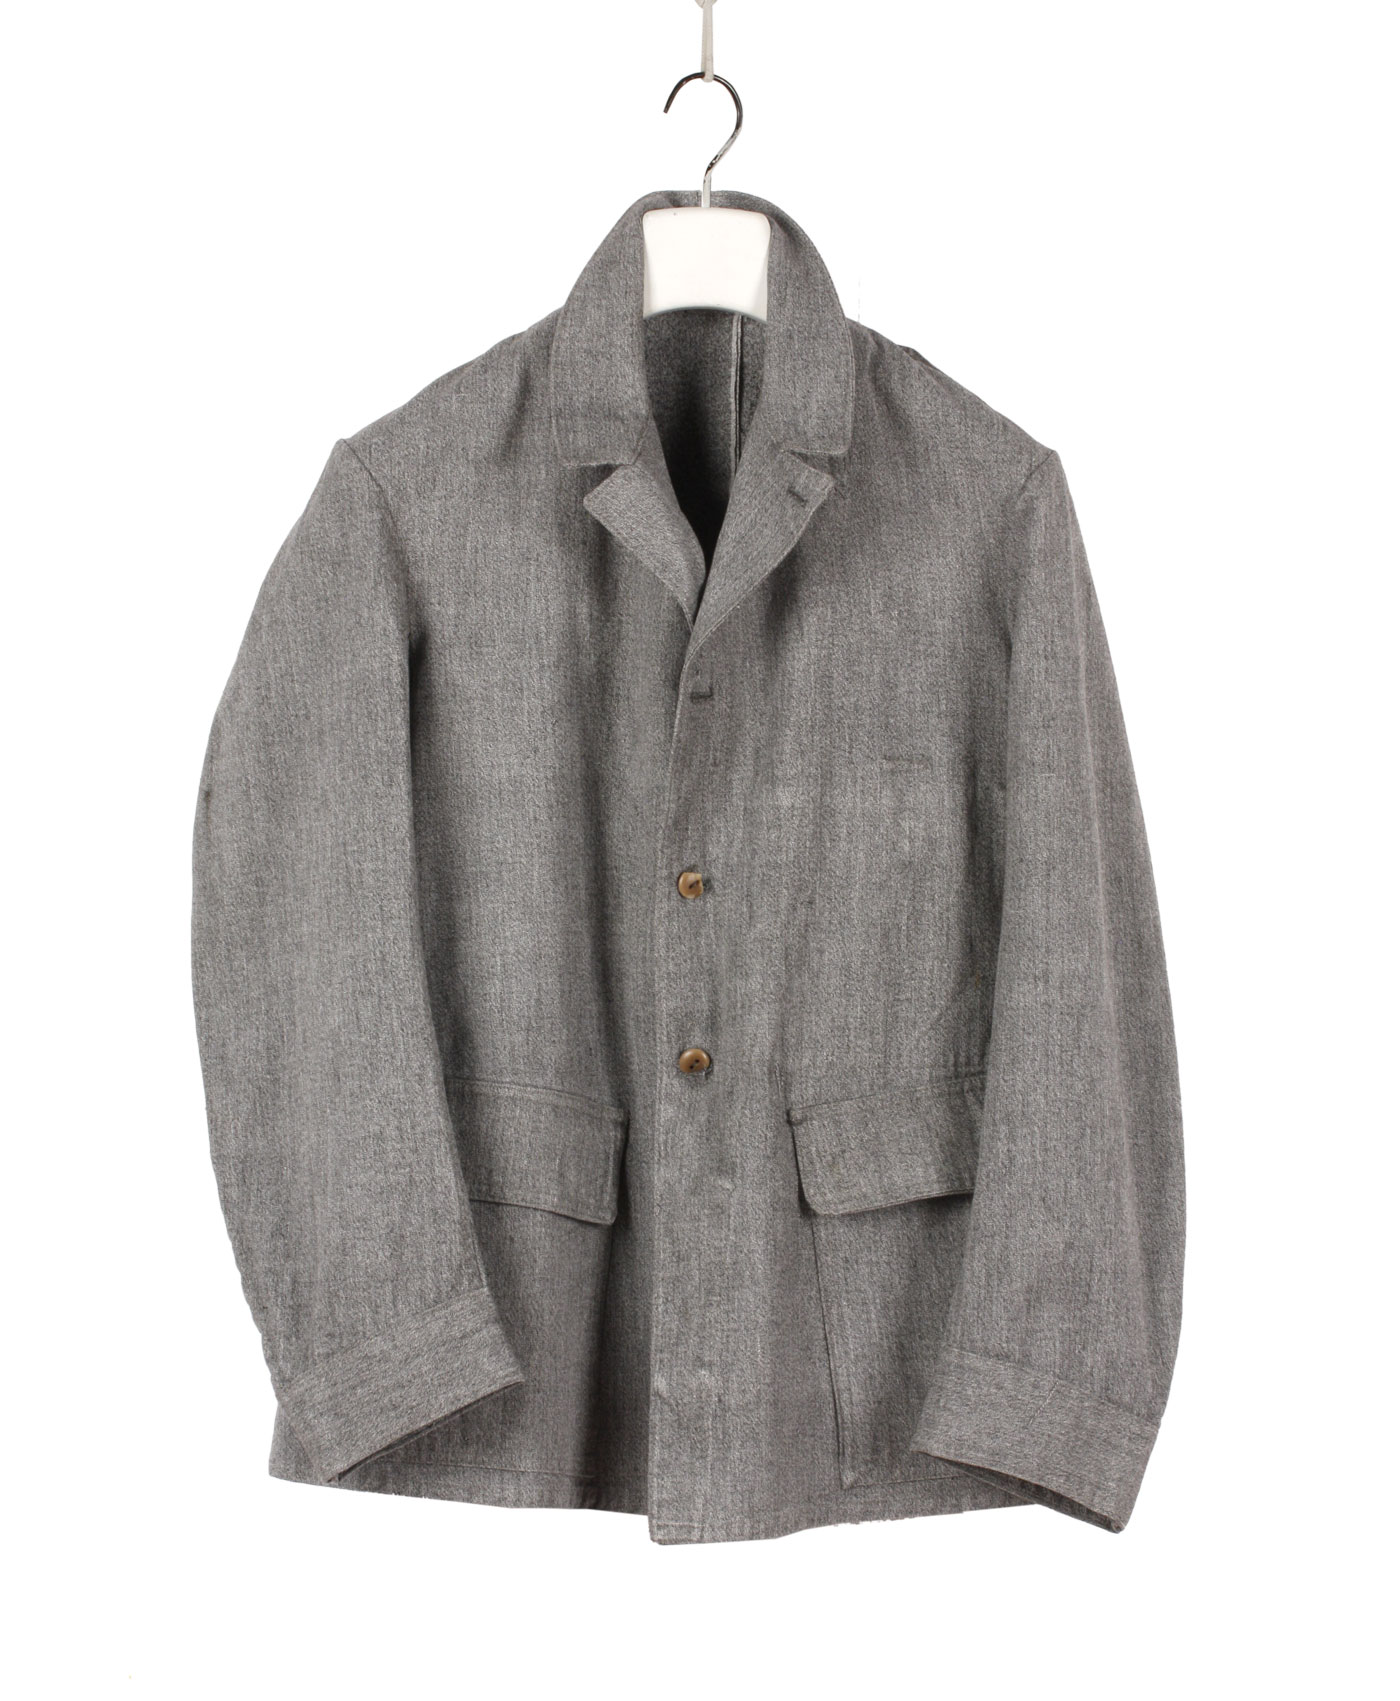 Italian Work Jacket ’60s